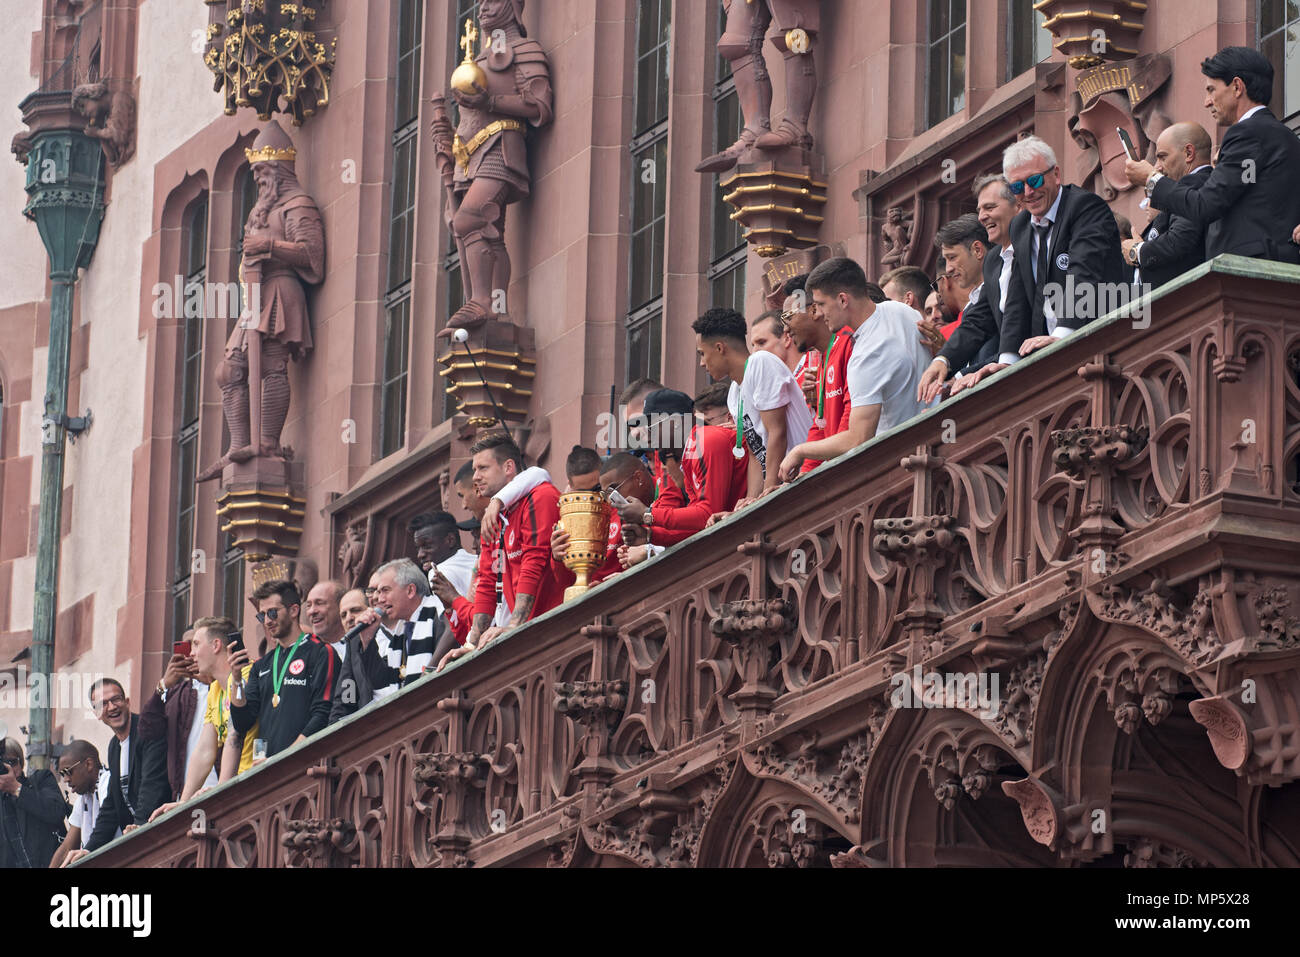 Empfang des deutschen Cup Gewinner 2018 Eintracht Frankfurt auf dem Balkon der Römer, Frankfurt am Main, Deutschland Stockfoto